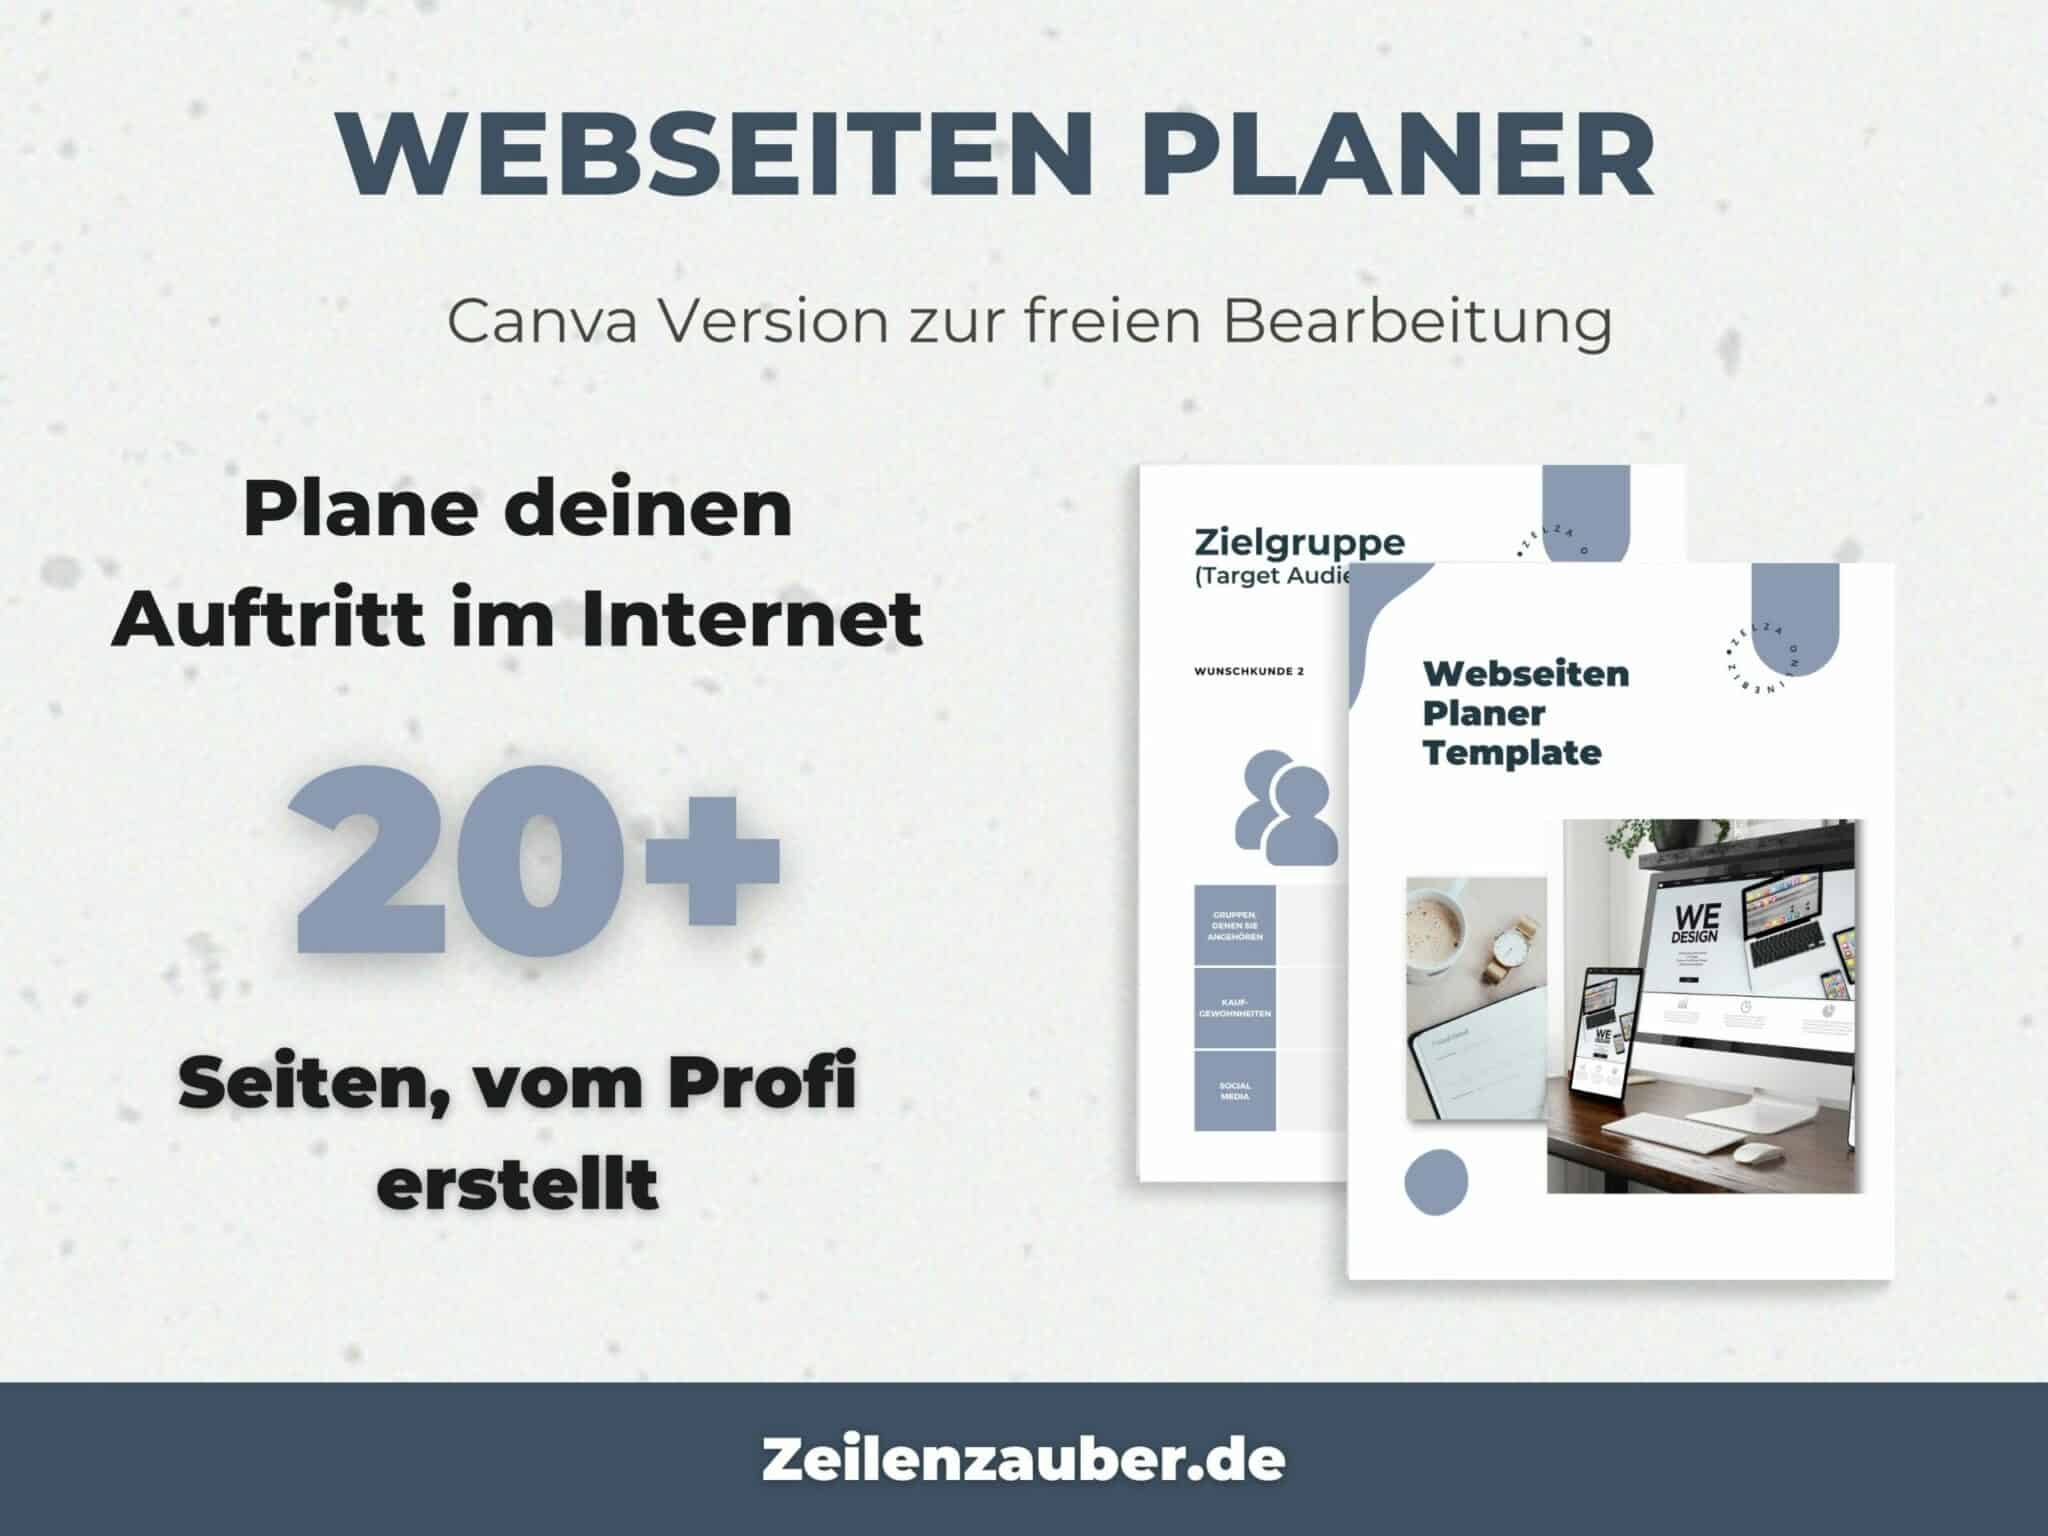 Webseiten Planer - Produktwerbung